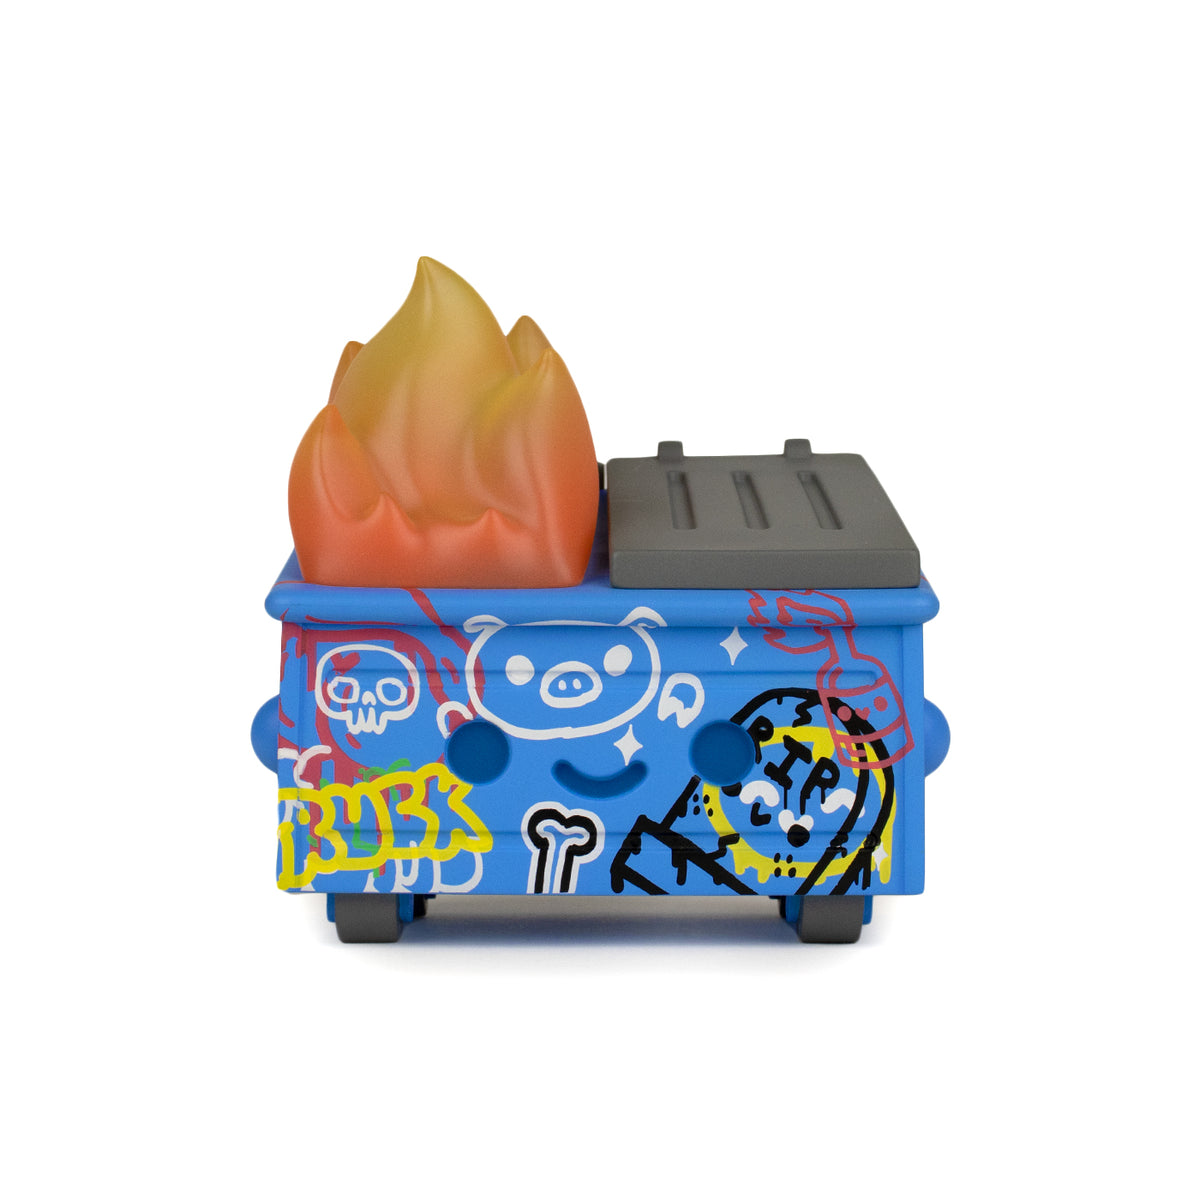 Dumpster Fire - Graffiti Vinyl Figure